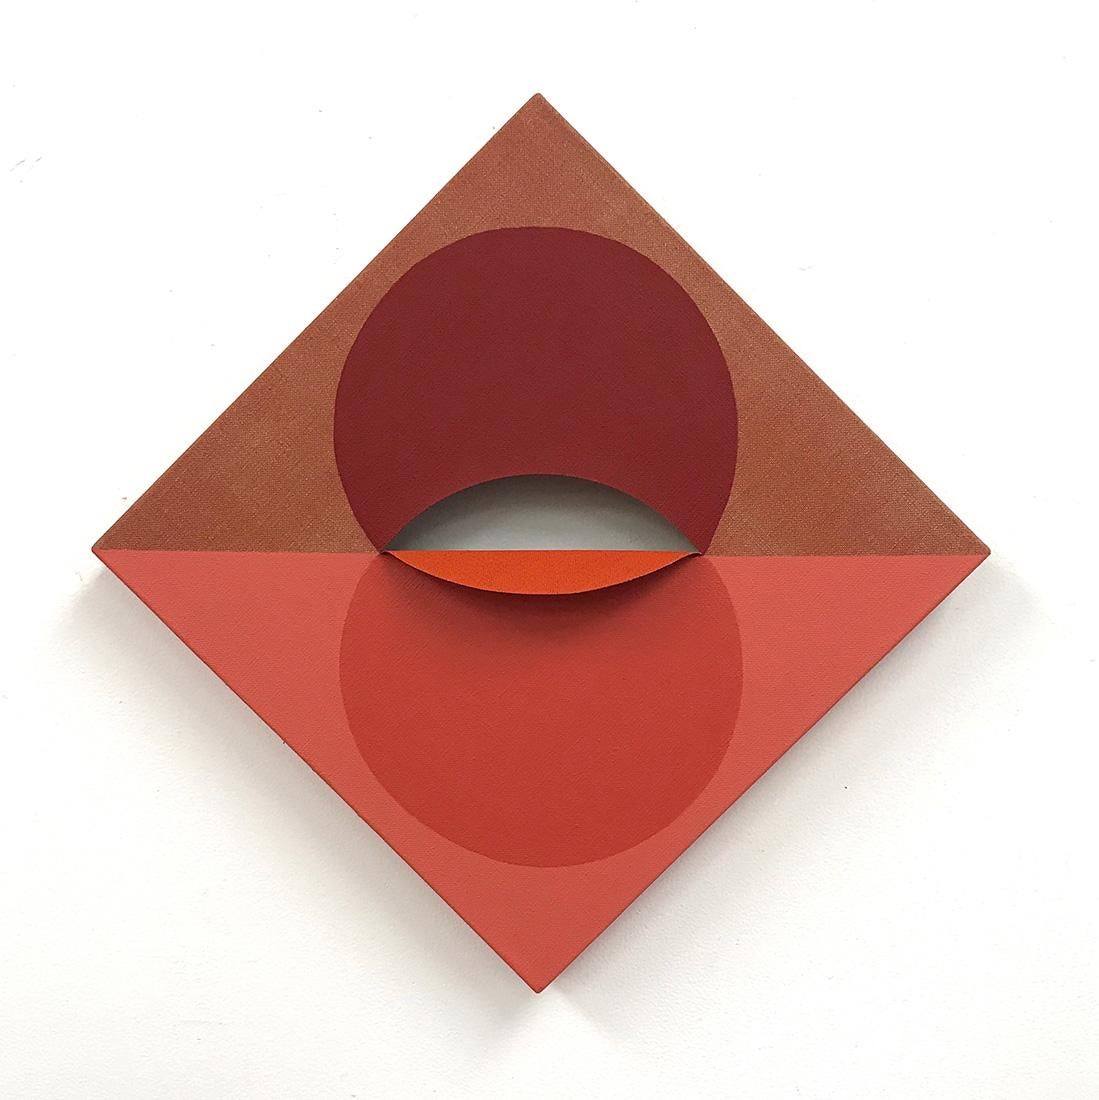 EQUIVALENCE 92- Tint et acrylique sur lin découpé - Peinture géométrique abstraite rouge